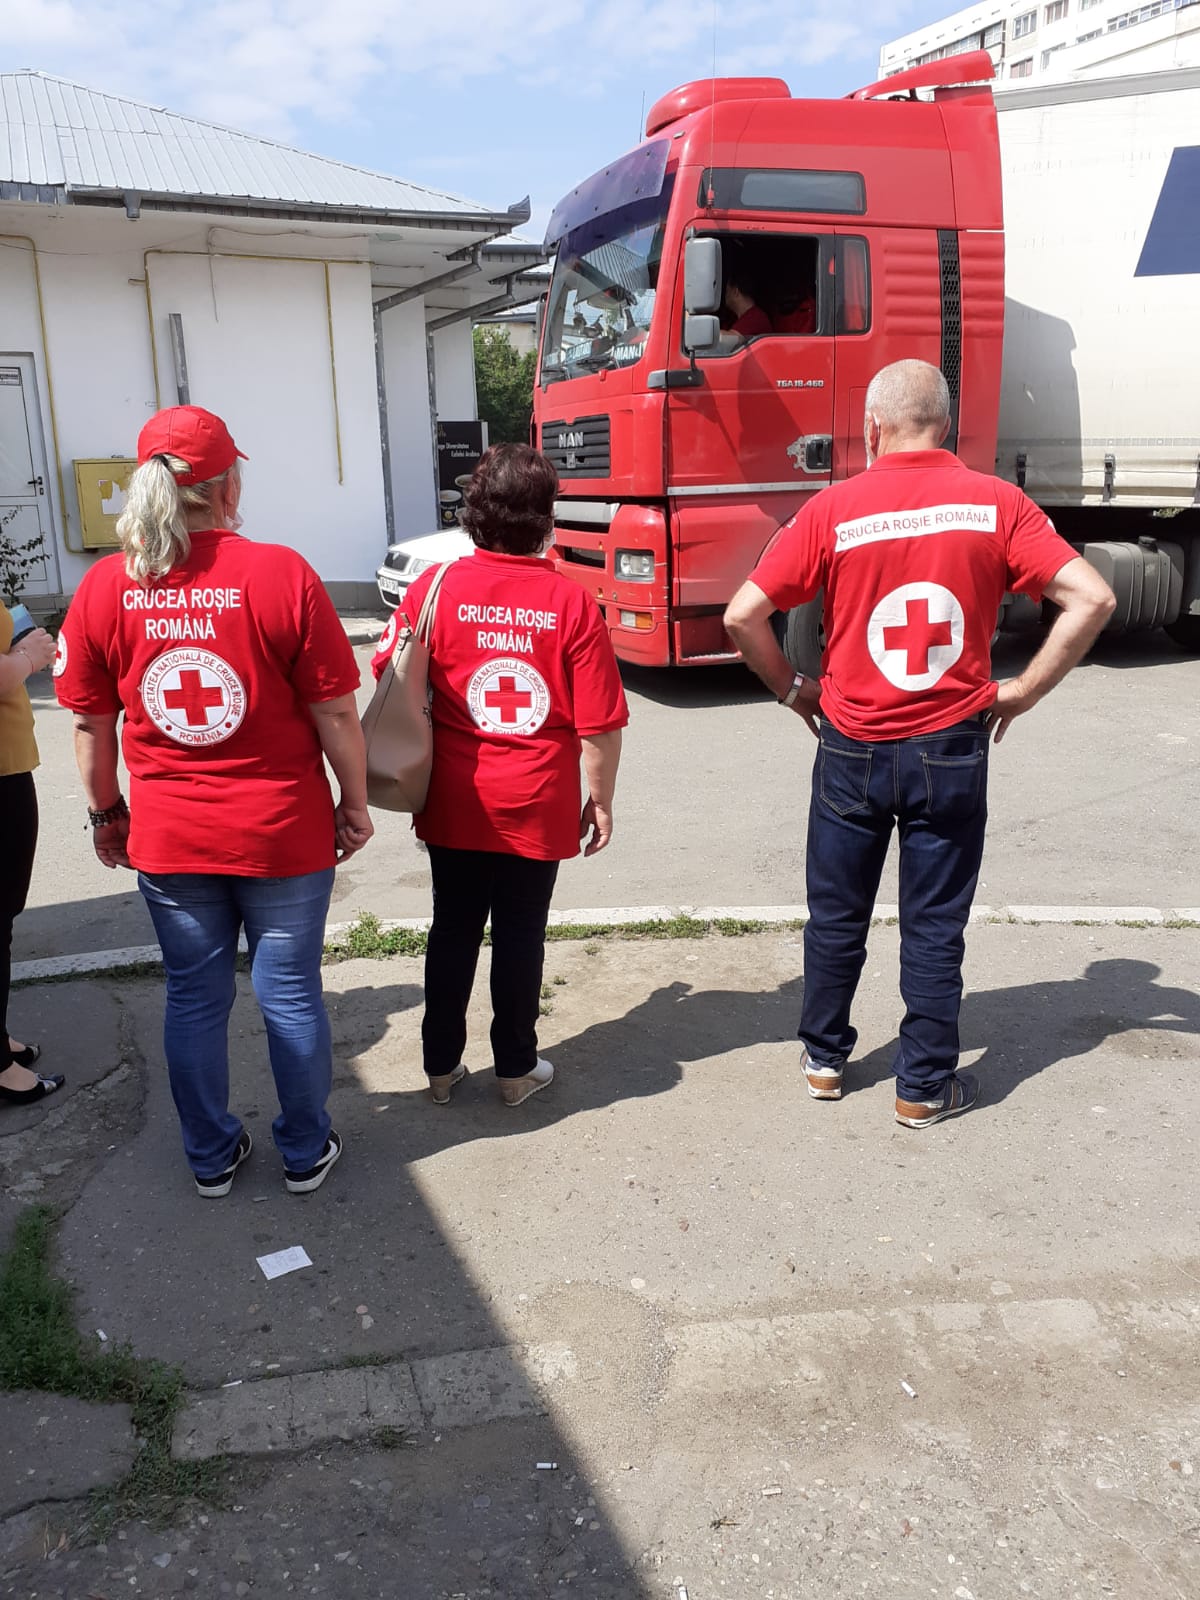 La Spitalul Județean de Urgență Buzău a ajuns o nouă donație [VIDEO]